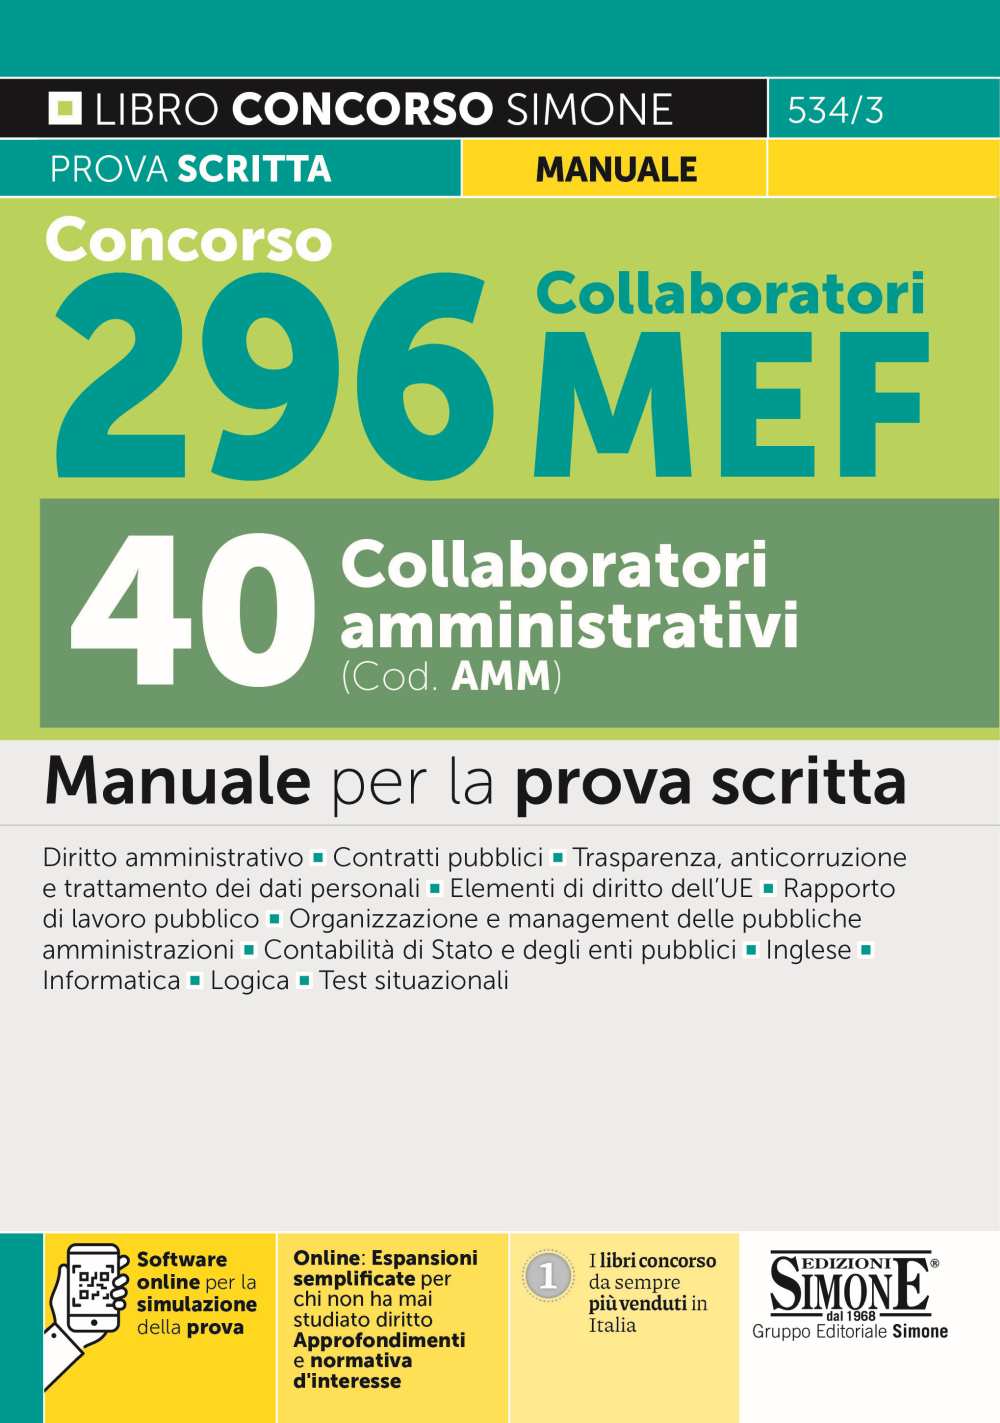 Concorso 296 Collaboratori MEF - 40 Collaboratori amministrativi (Cod. AMM) - Manuale - 534/3